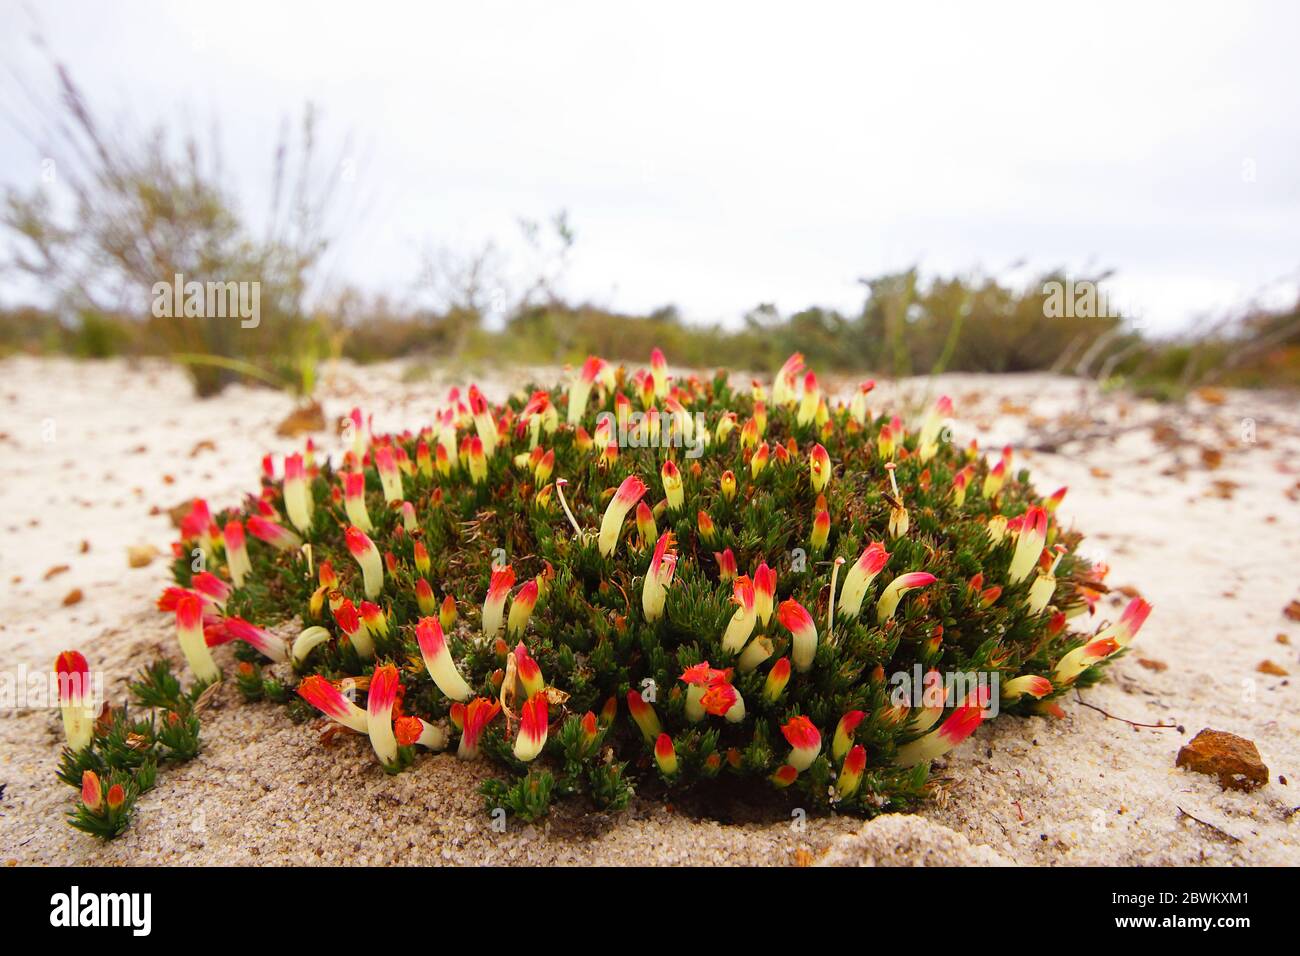 Flores silvestres australianas: Parche geométrico redondo de Lechenaultia tubiflora con flores amarillas y rojas, en su hábitat natural en el suroeste de Australia Foto de stock